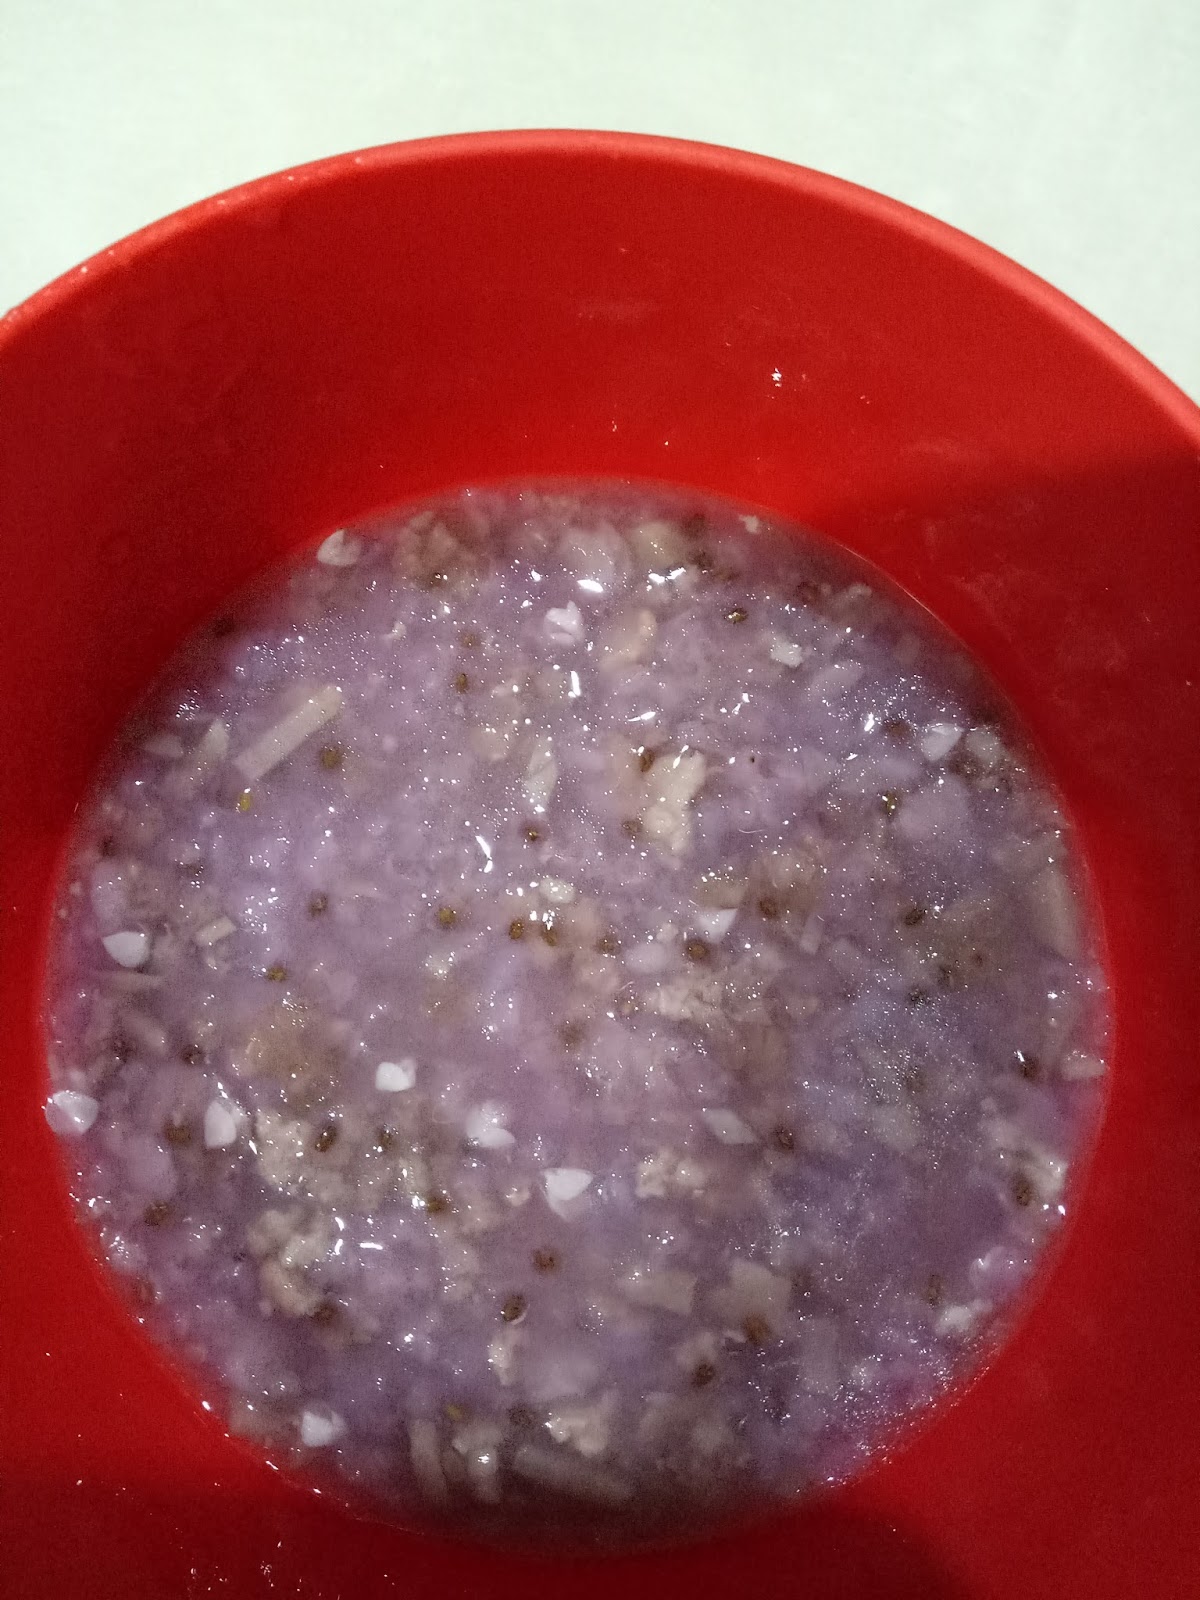 紫薯糙米粥怎么做_紫薯糙米粥的做法_Summer_夏天__豆果美食